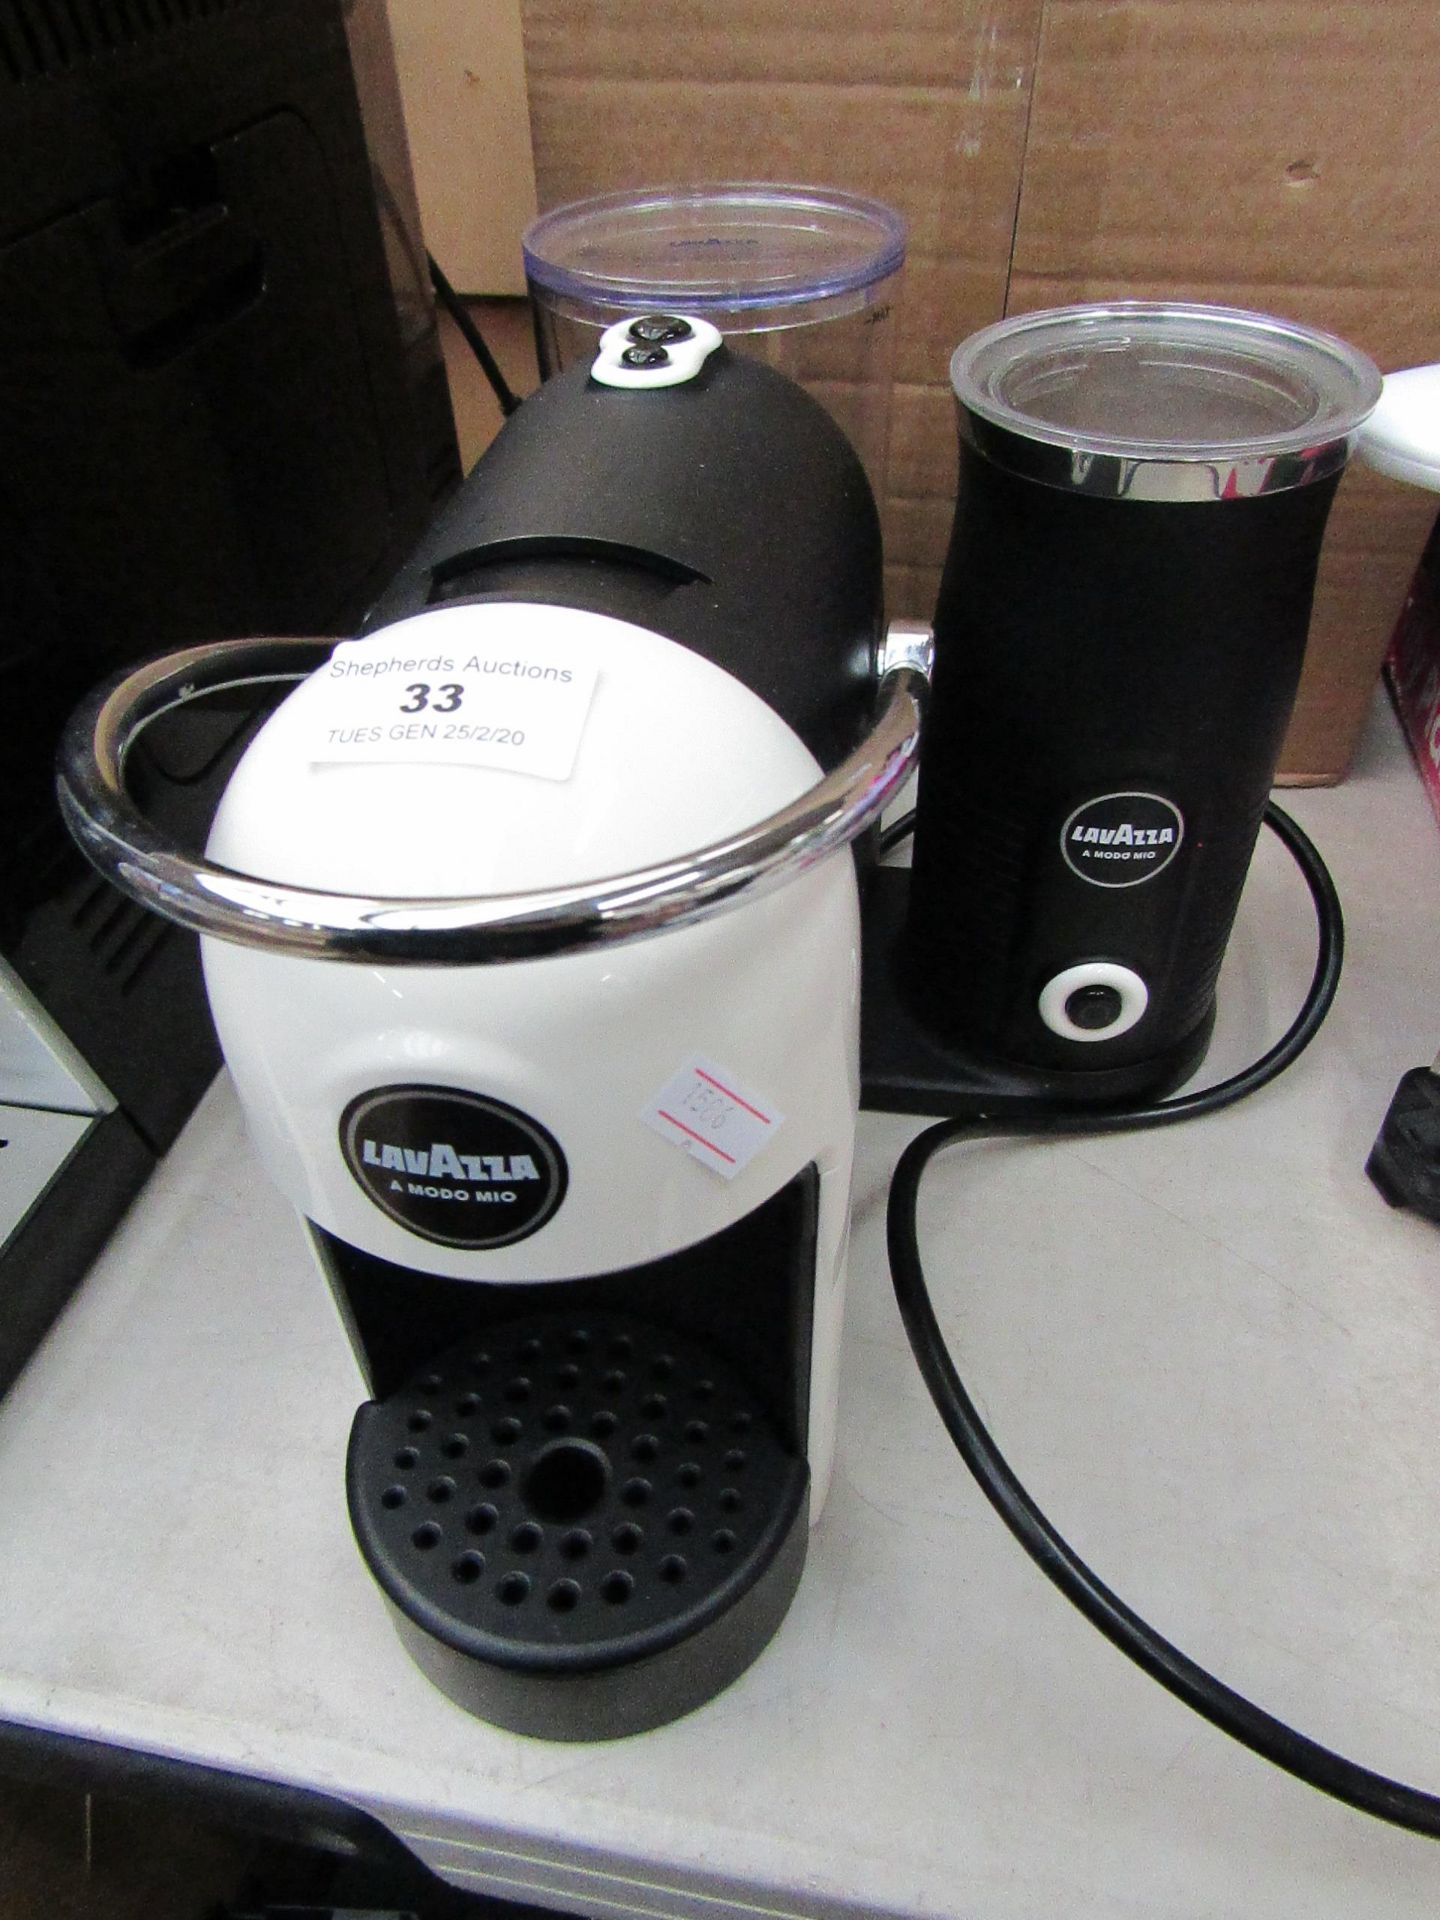 LAVAZZA - Espresso Machine - Powers On & Boxed.